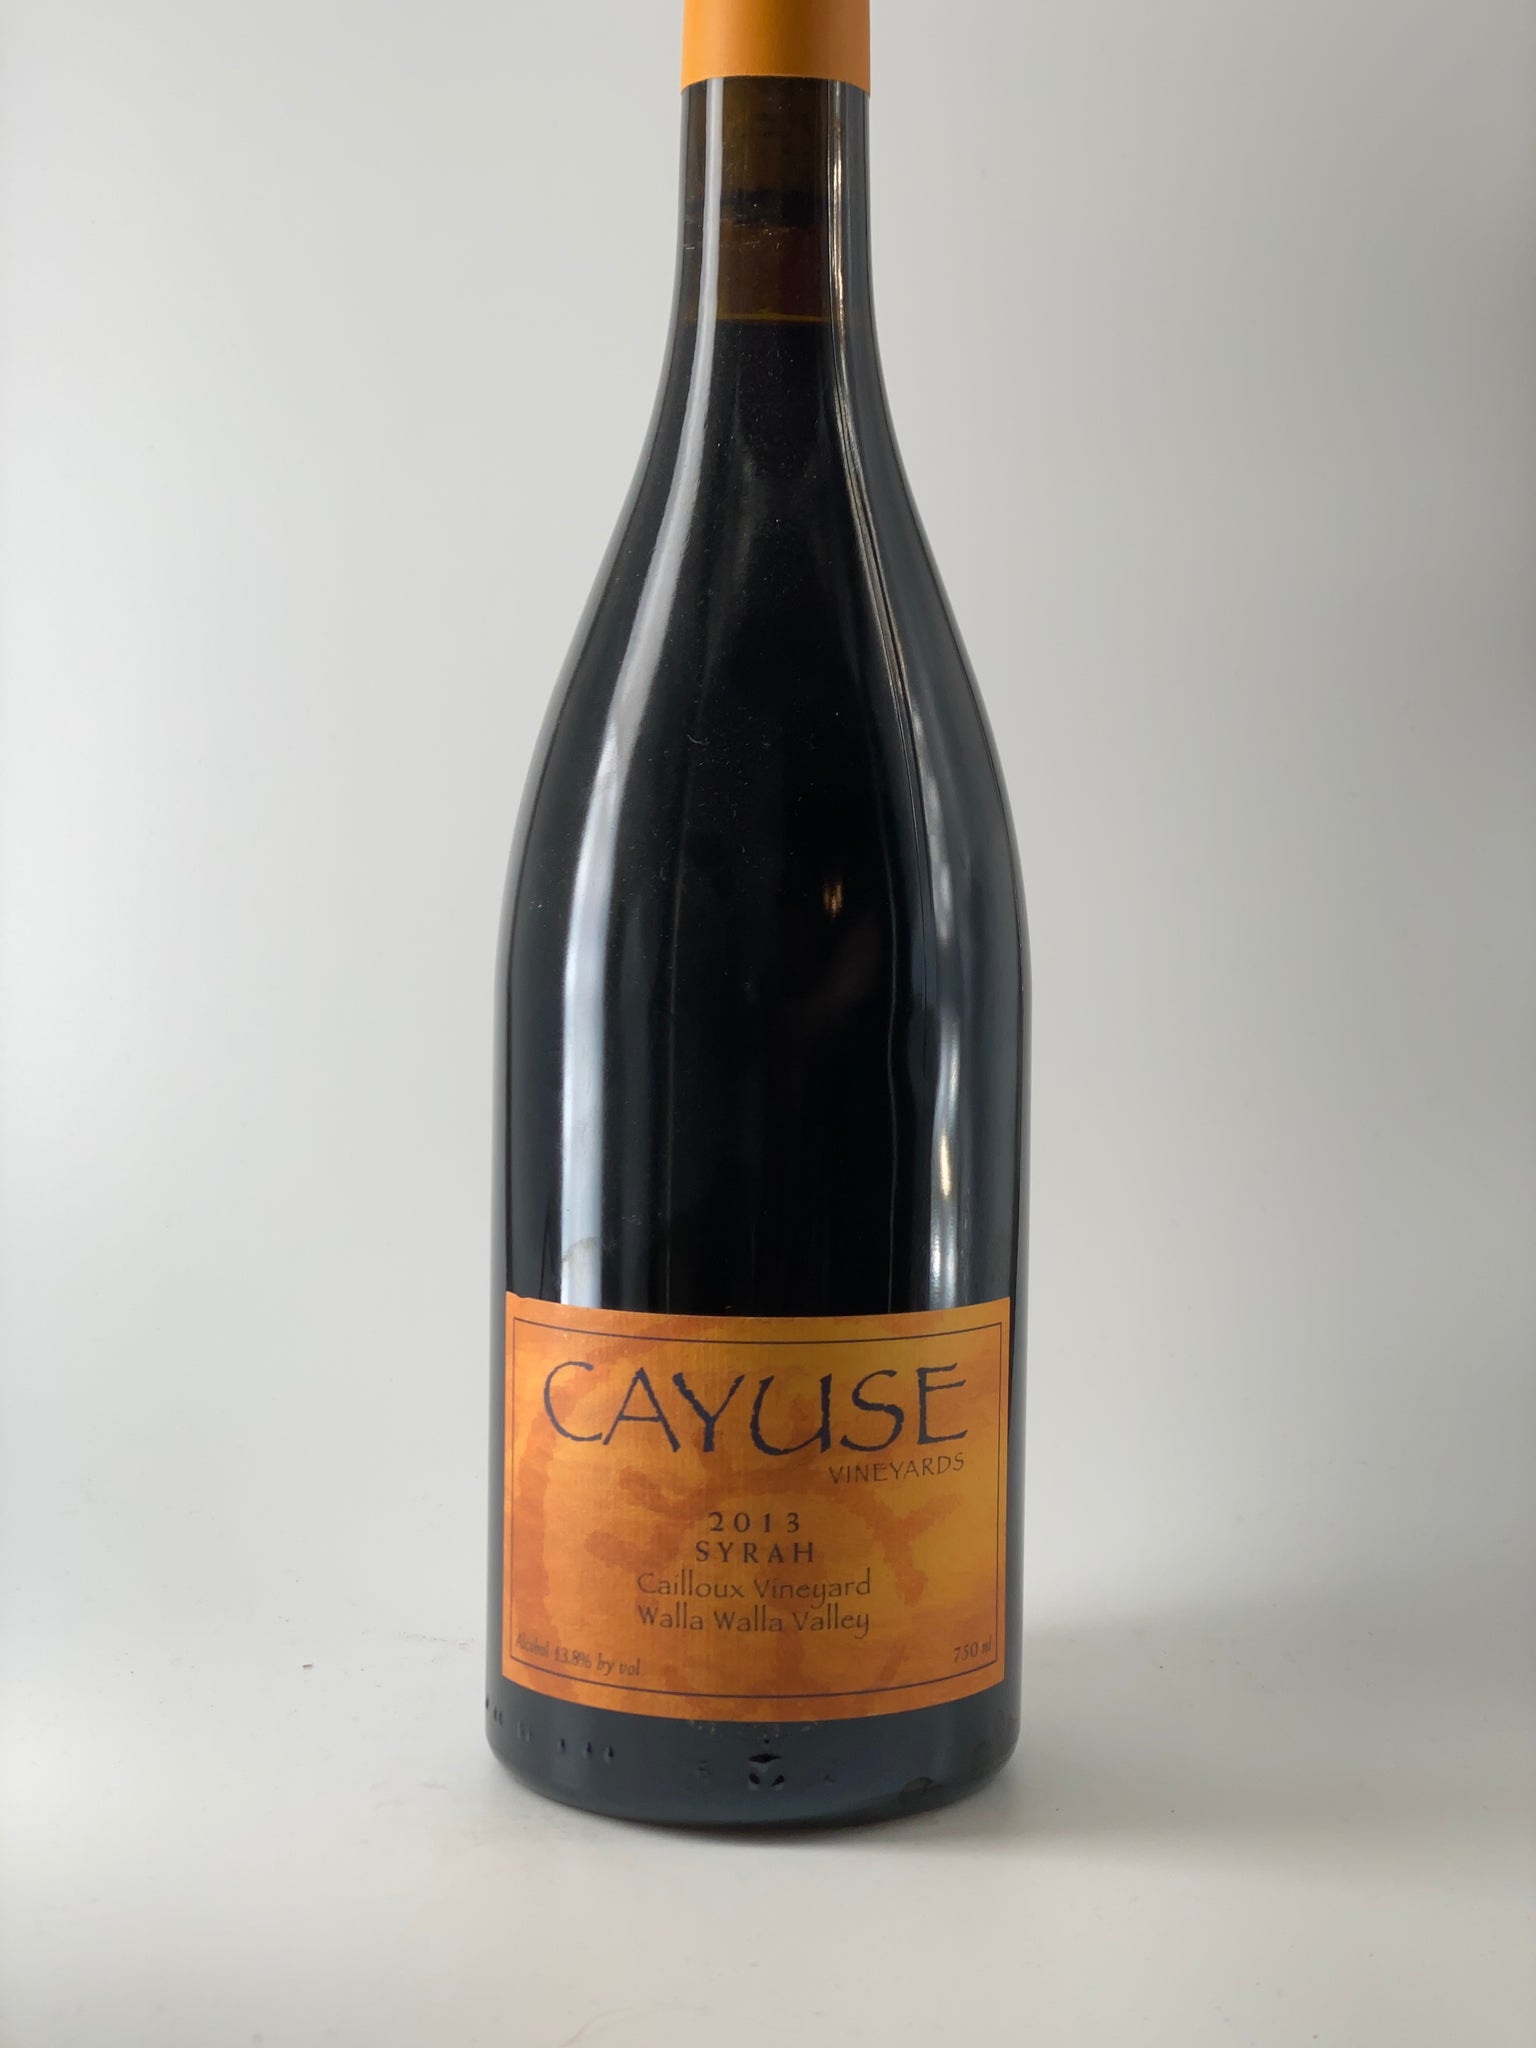 Syrah, Cayuse Caillioux Vineyard